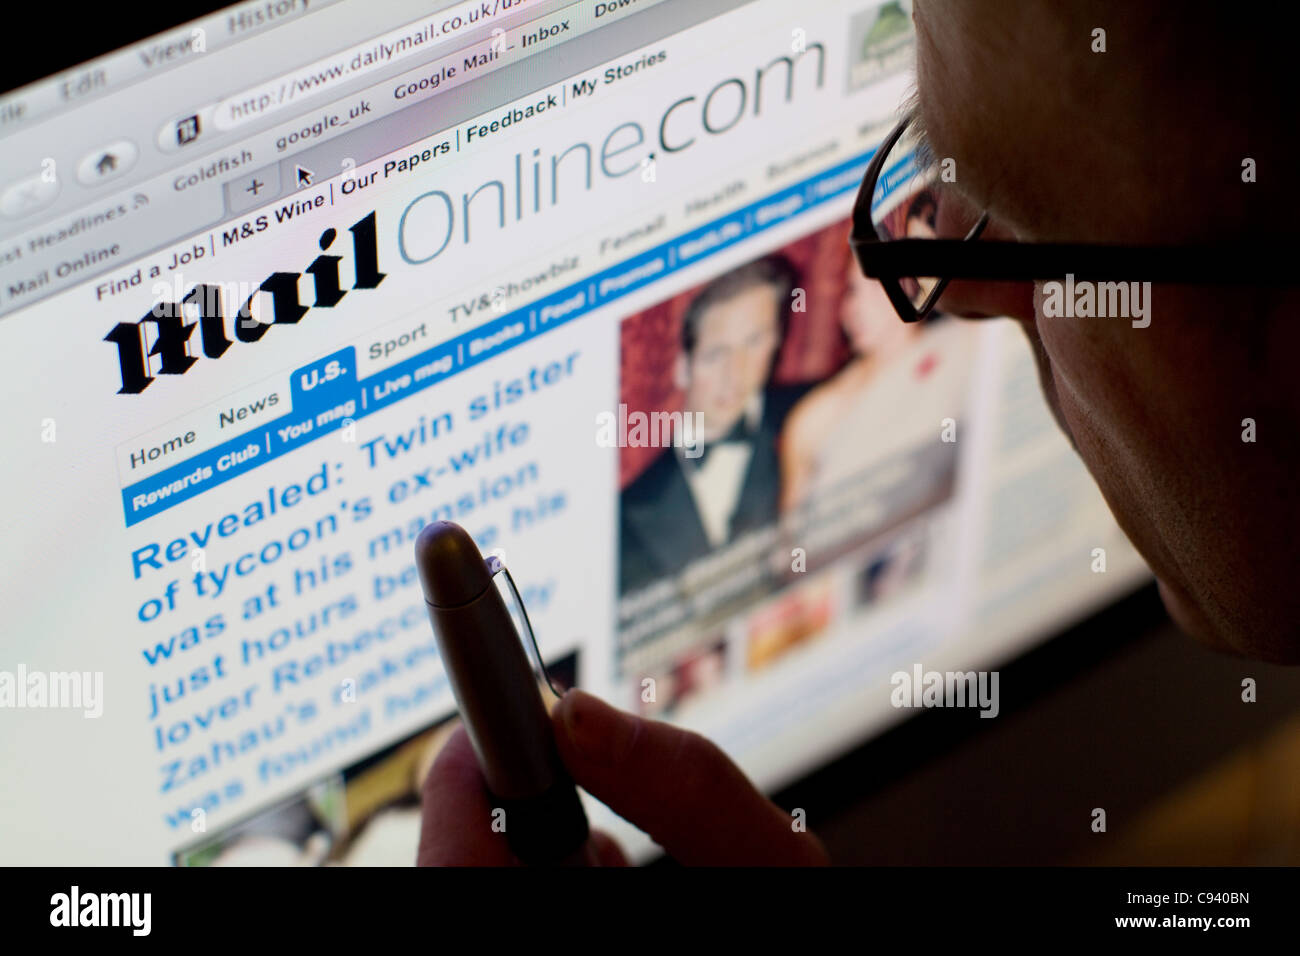 Site internet de Daily Mail journal basé au Royaume-Uni Banque D'Images